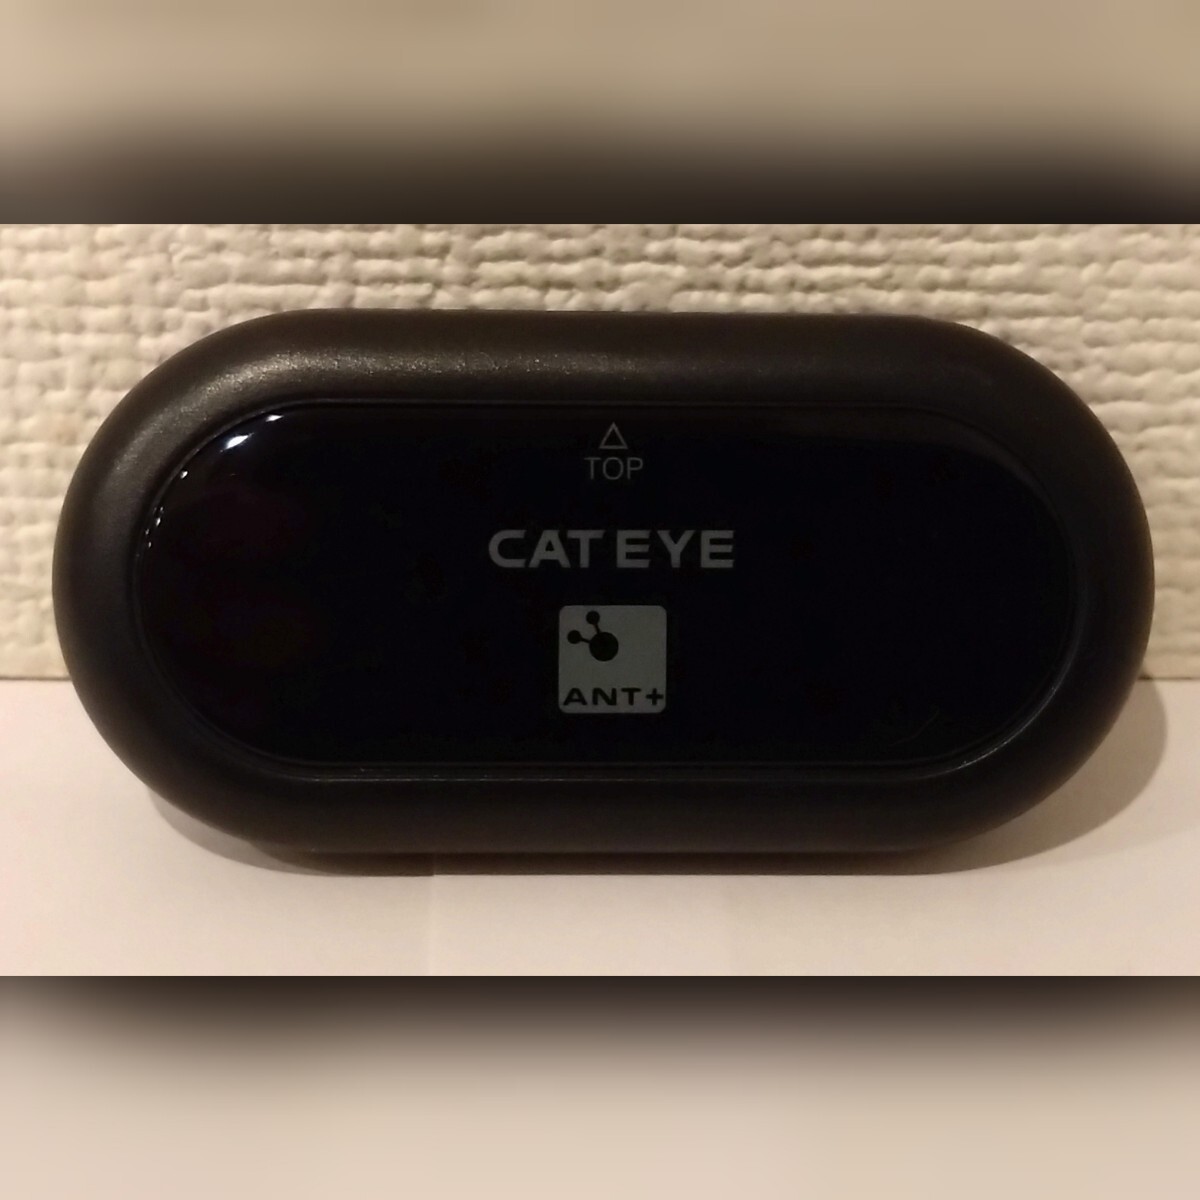 CATEYE is - tray toHR-11 AN heart . sensor 